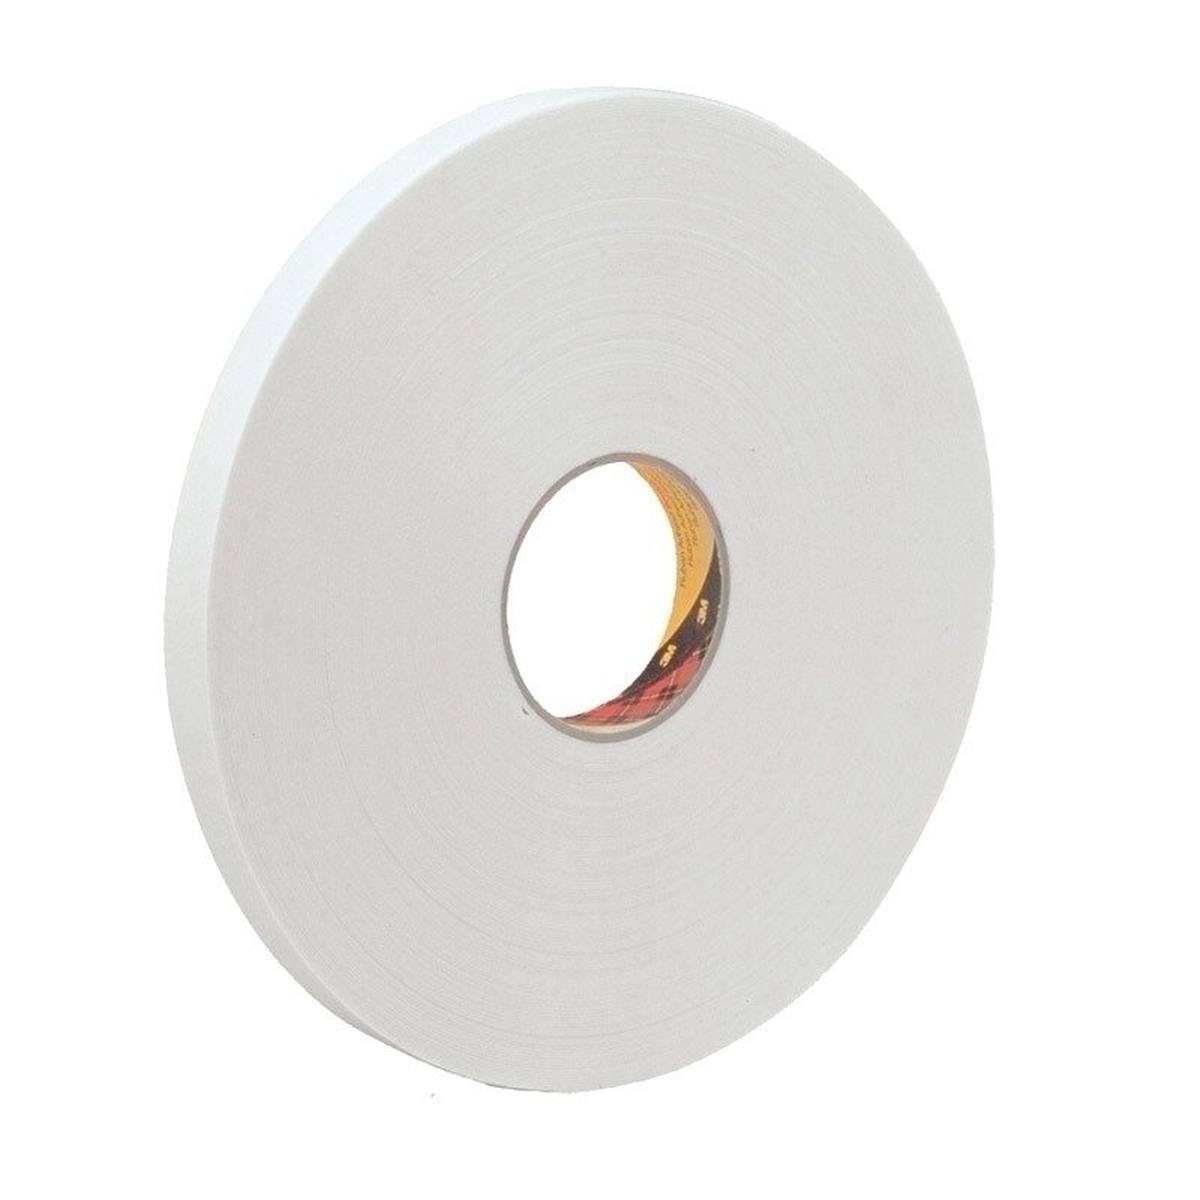 3M ruban adhésif mousse PE avec adhésif acrylique 9539, blanc, 19 mm x 66 m, 0,8 mm